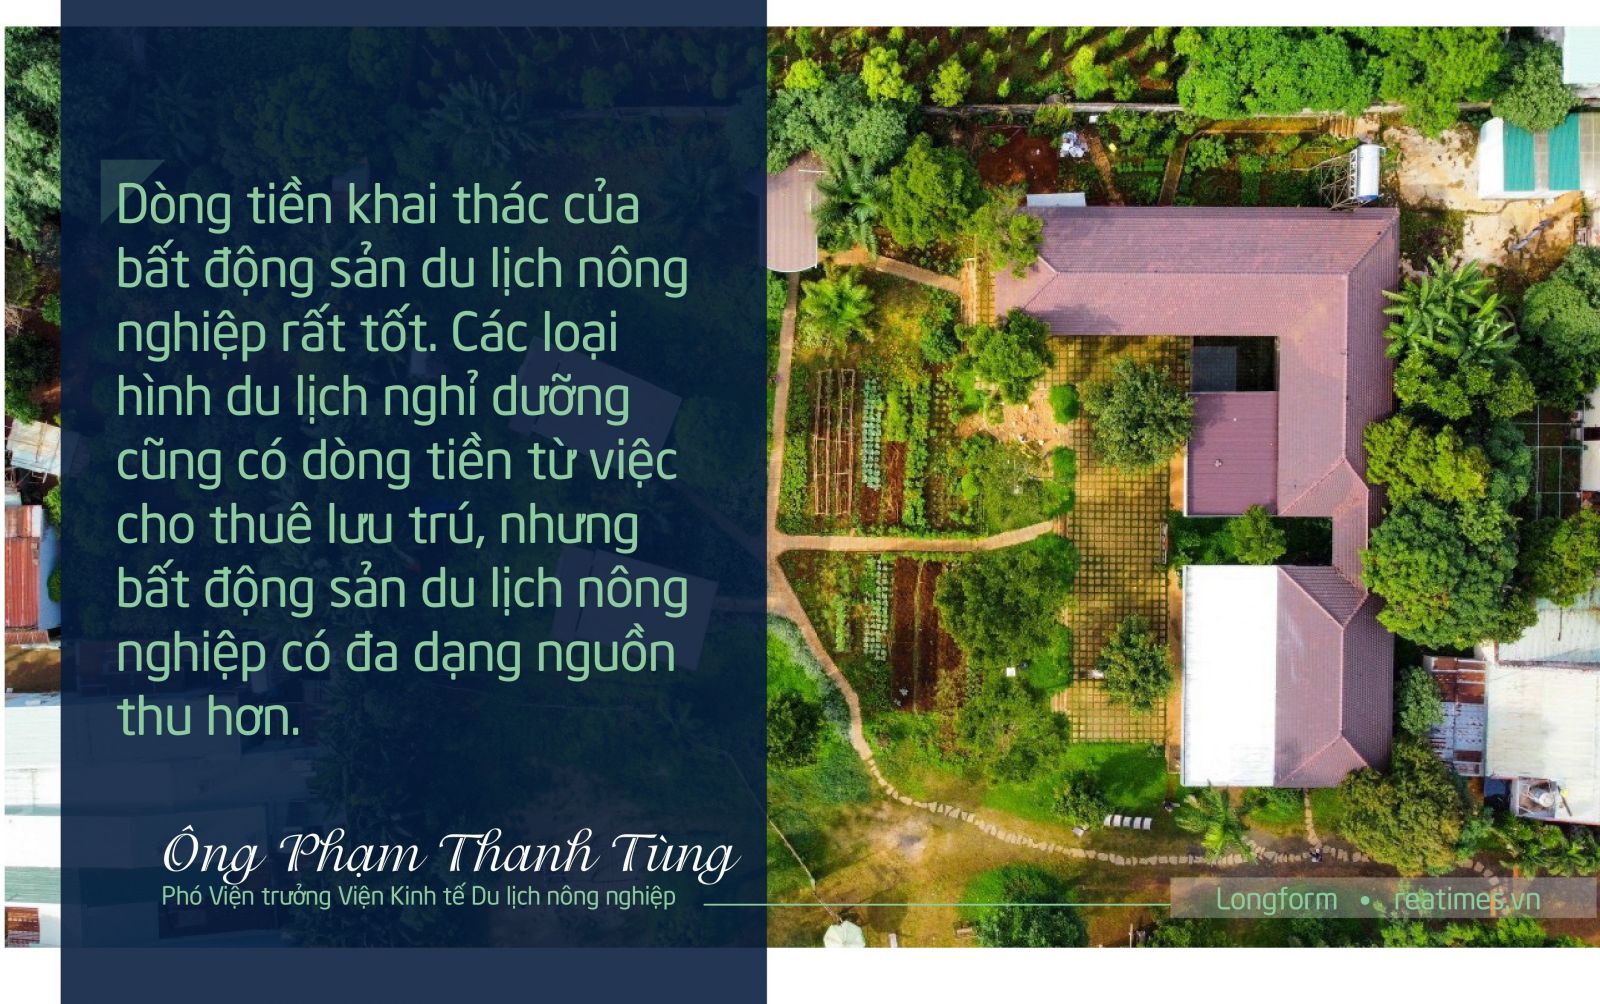 Du lịch nông nghiệp TS Phạm Thanh Tùng